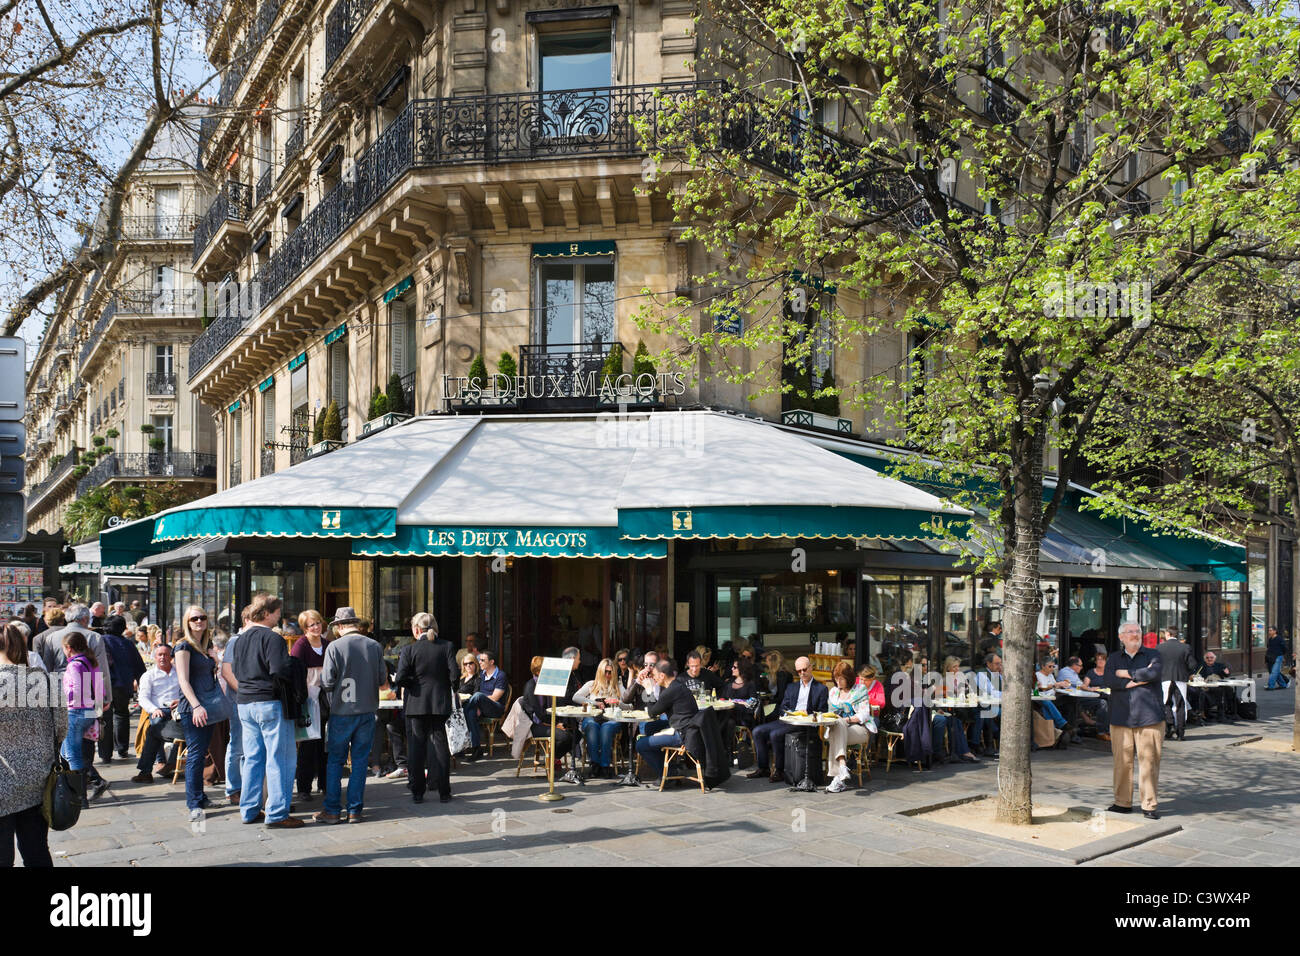 Les Deux Magots cafe on the Place St Germain des Pres, Paris, France Stock Photo